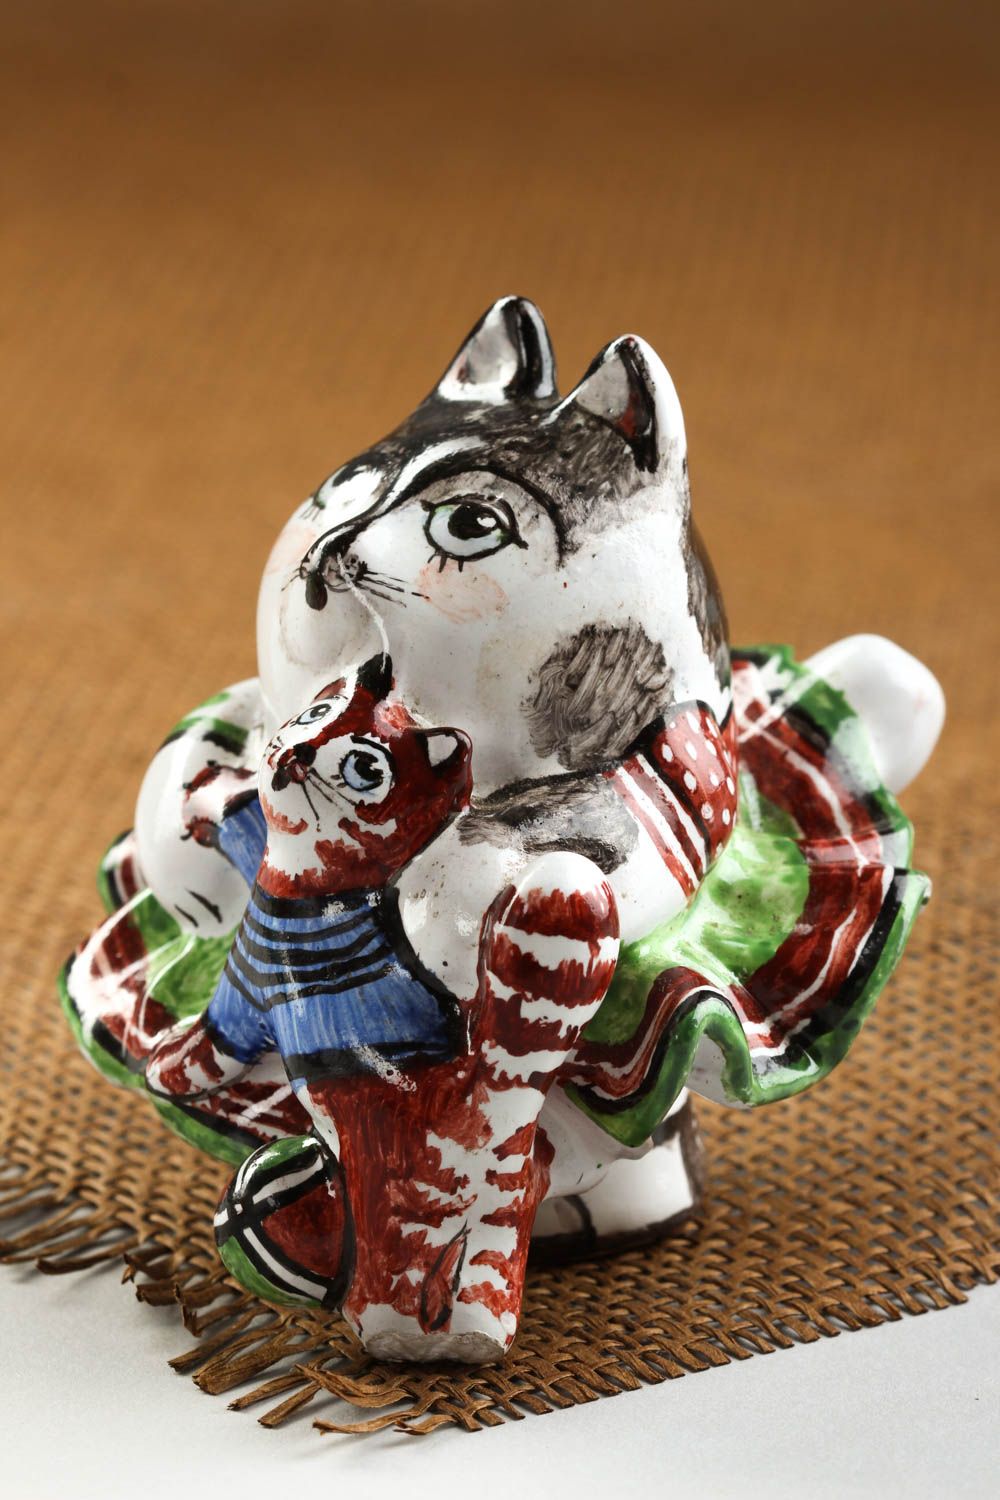 Статуэтка для декора ручной работы статуэтка животного фигурка из глины кошка фото 1